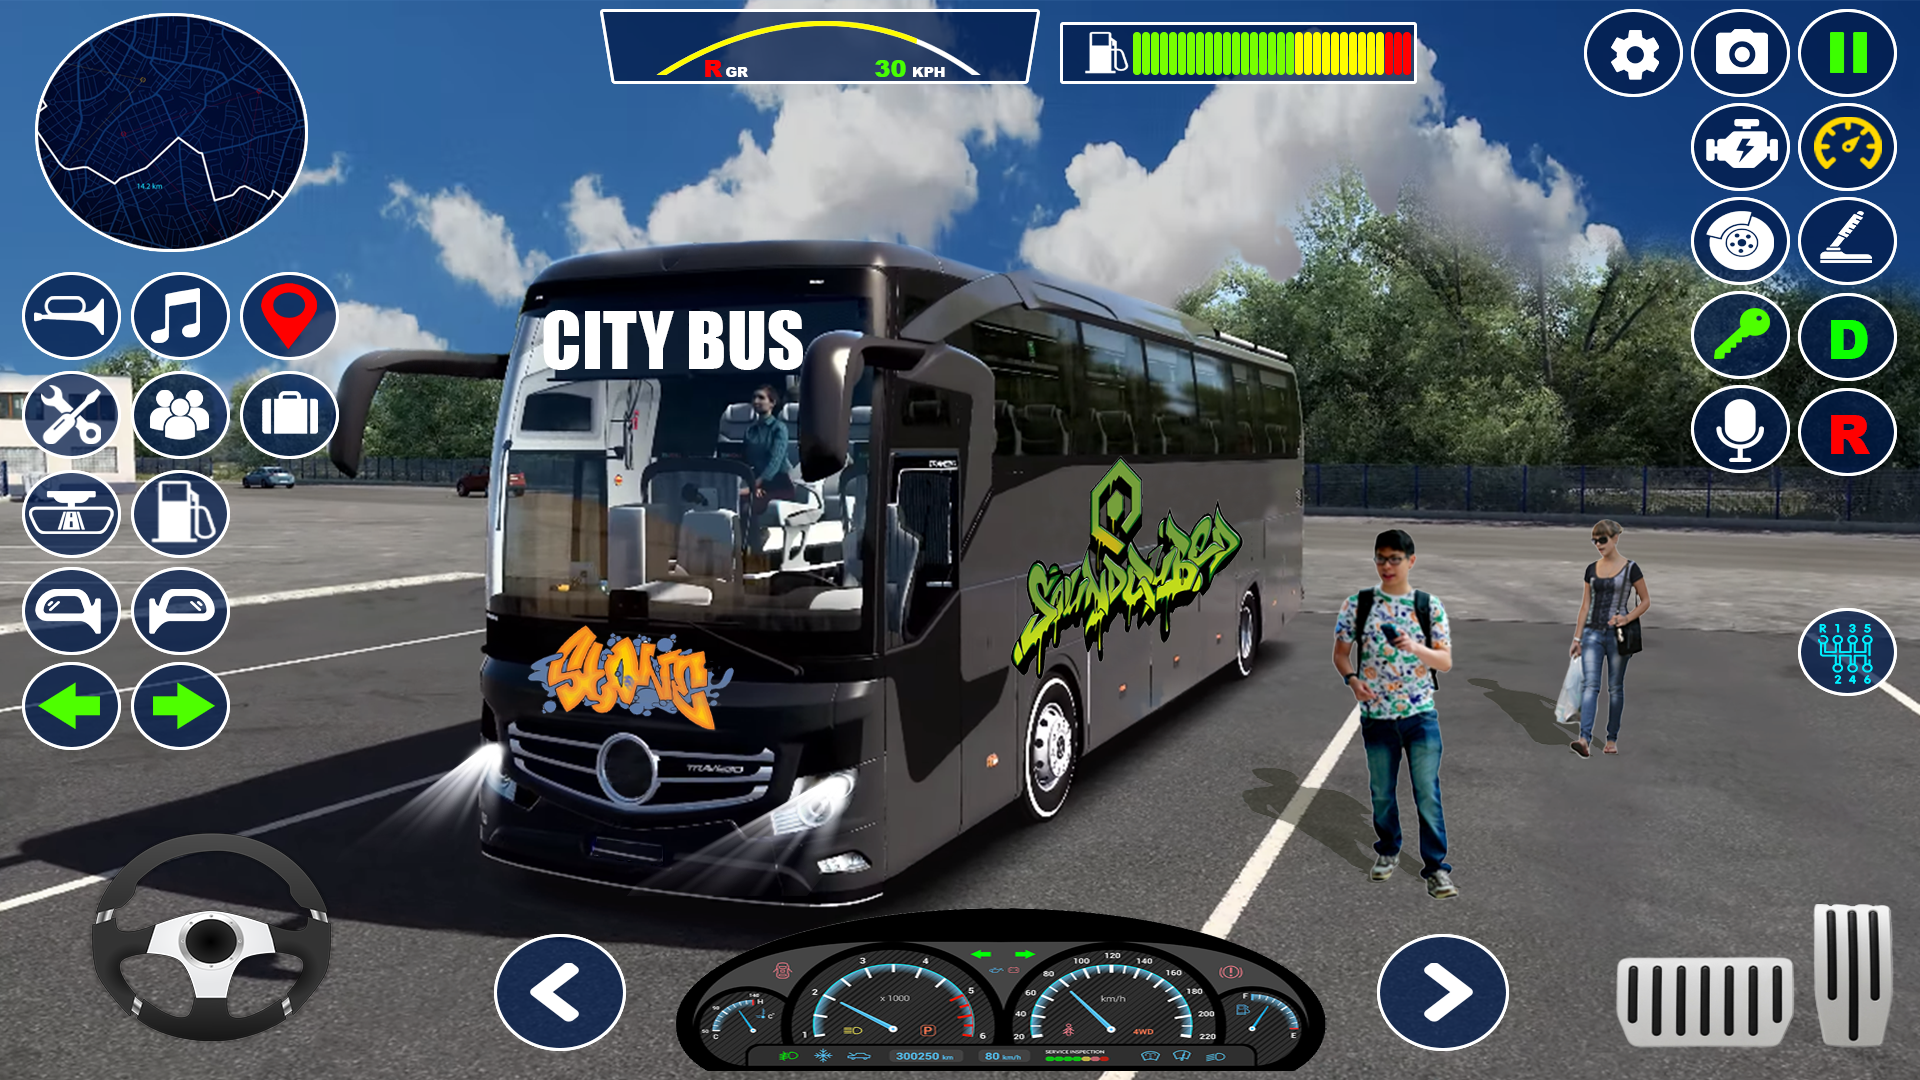 Jogo offline 3D de corrida de ônibus versão móvel andróide iOS apk